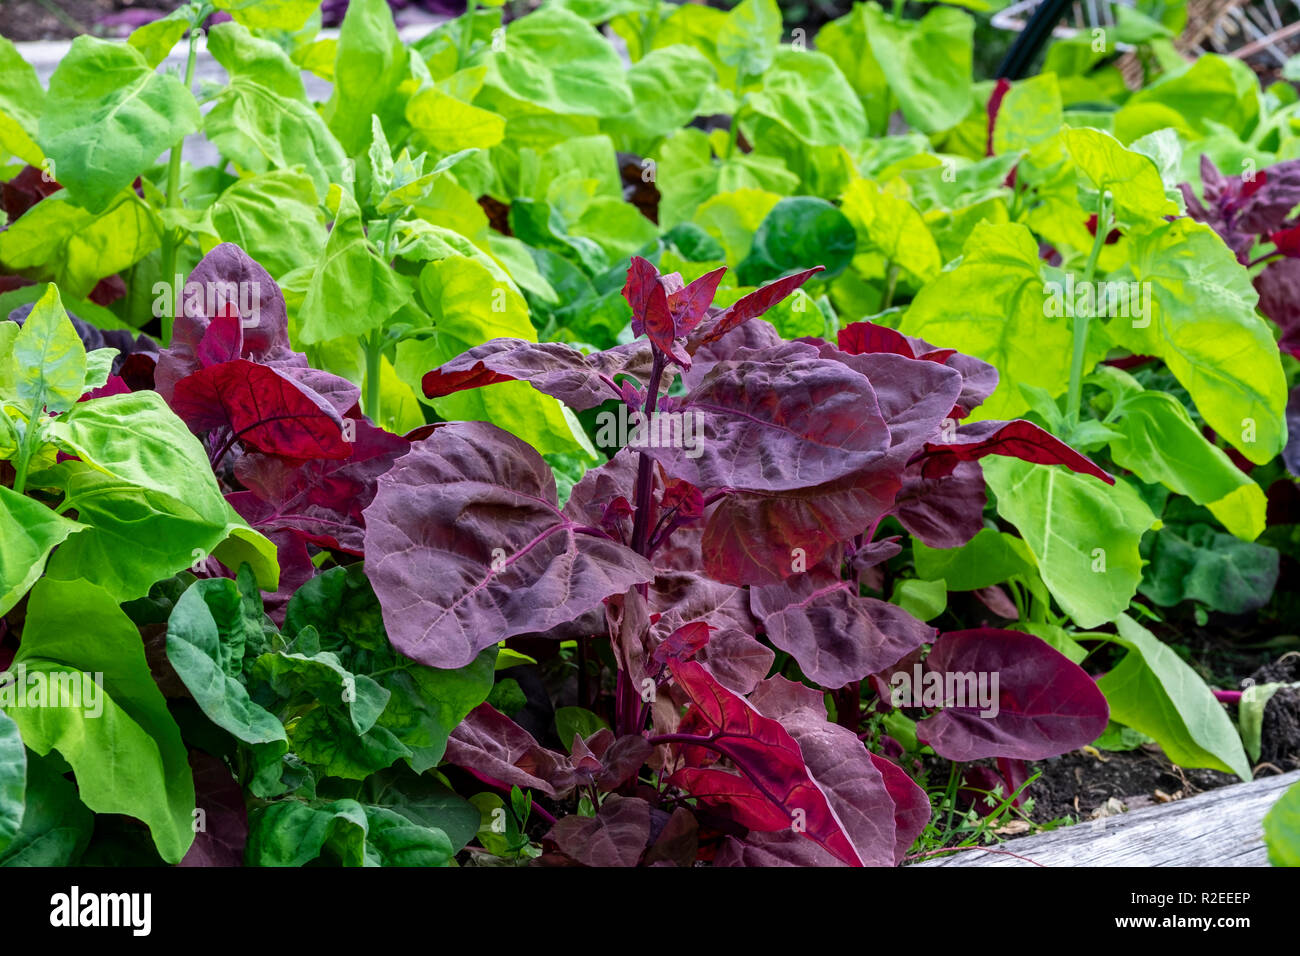 Grün und Rot, orach atripex Hortensis, eine Vielzahl von Saltbush im Zusammenhang mit Spinat einer kontrastierenden Farbe spritzen in den Gemüsegarten. Stockfoto